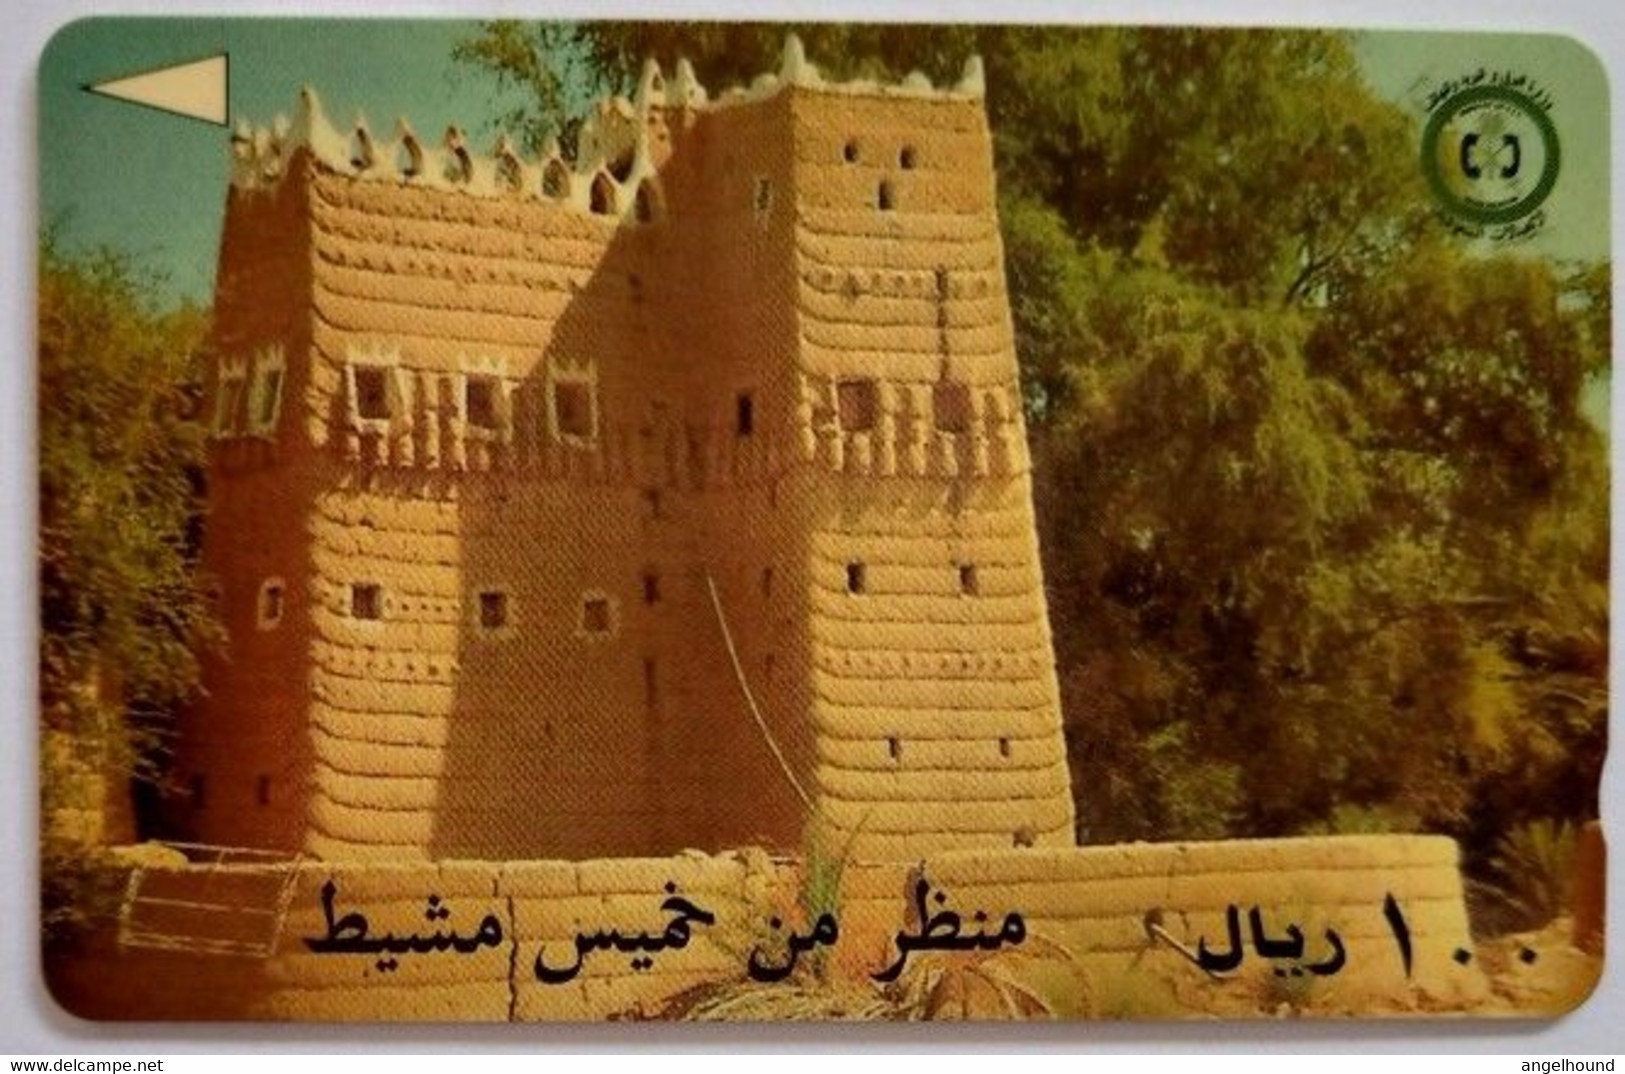 Saudi Arabia SAUDH 100 Riyals "  Khamis Mushayt Fort " - Arabie Saoudite